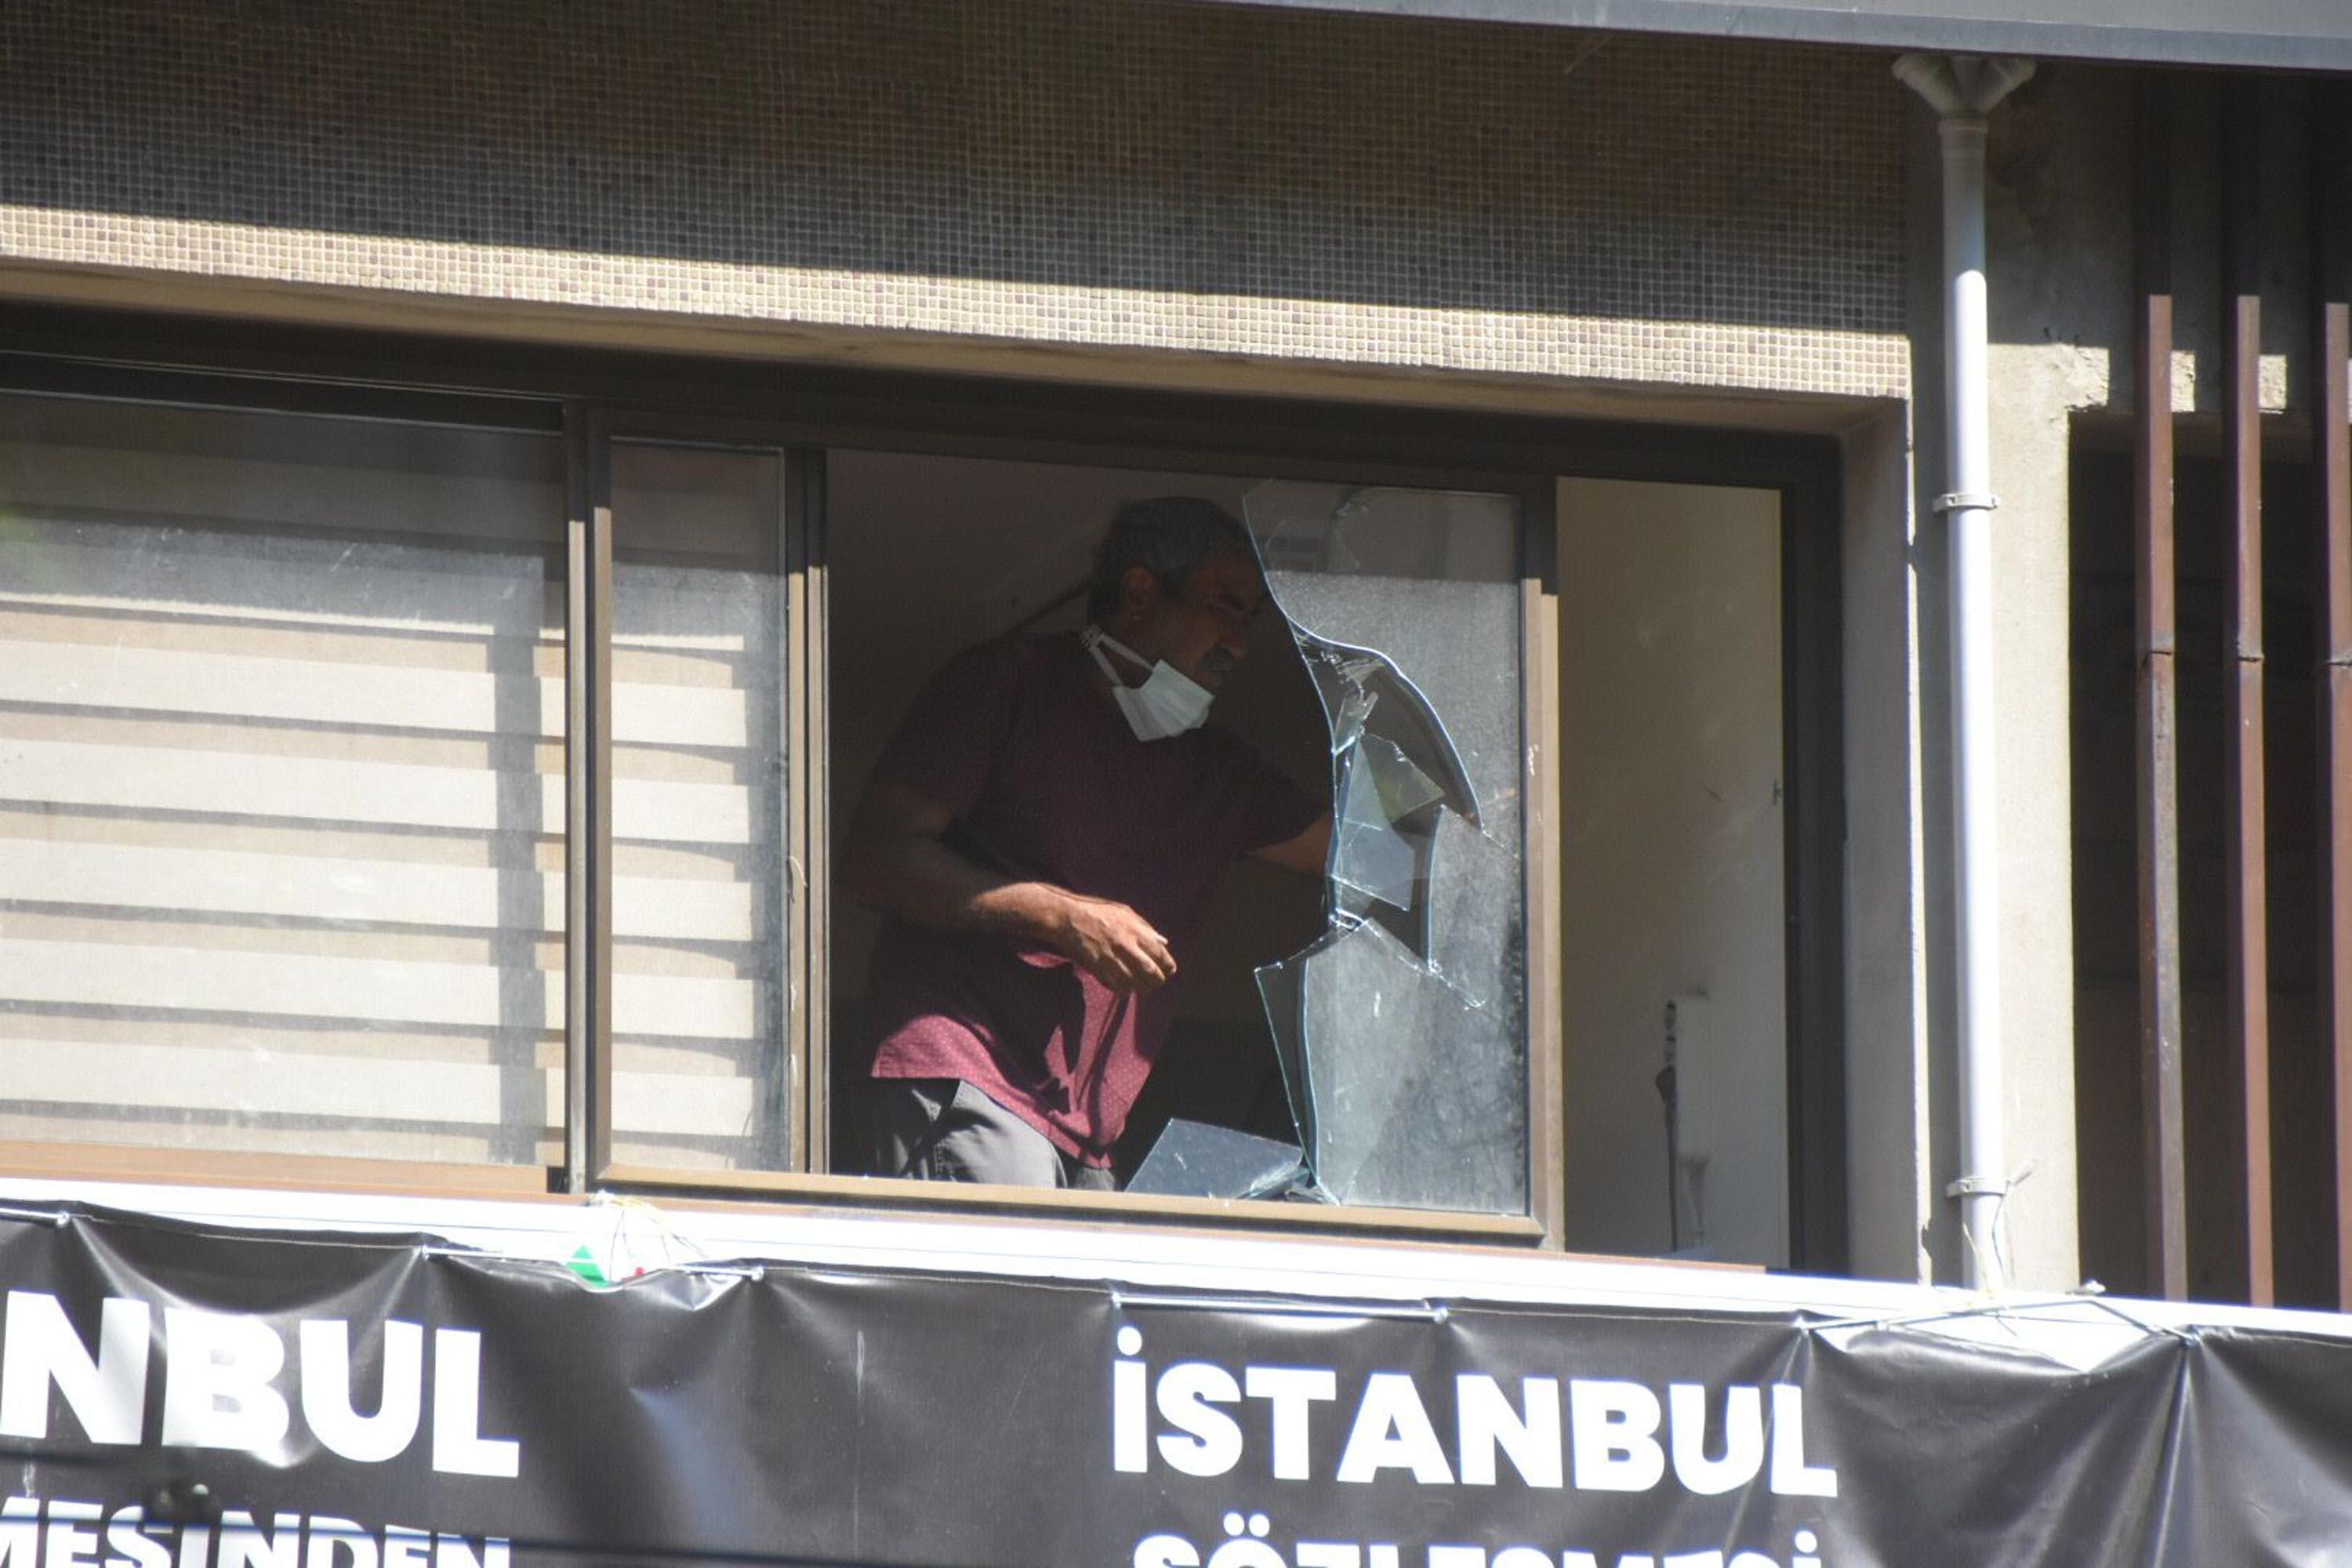 HDP il binasındaki saldırının şüphelisi tutuklandı